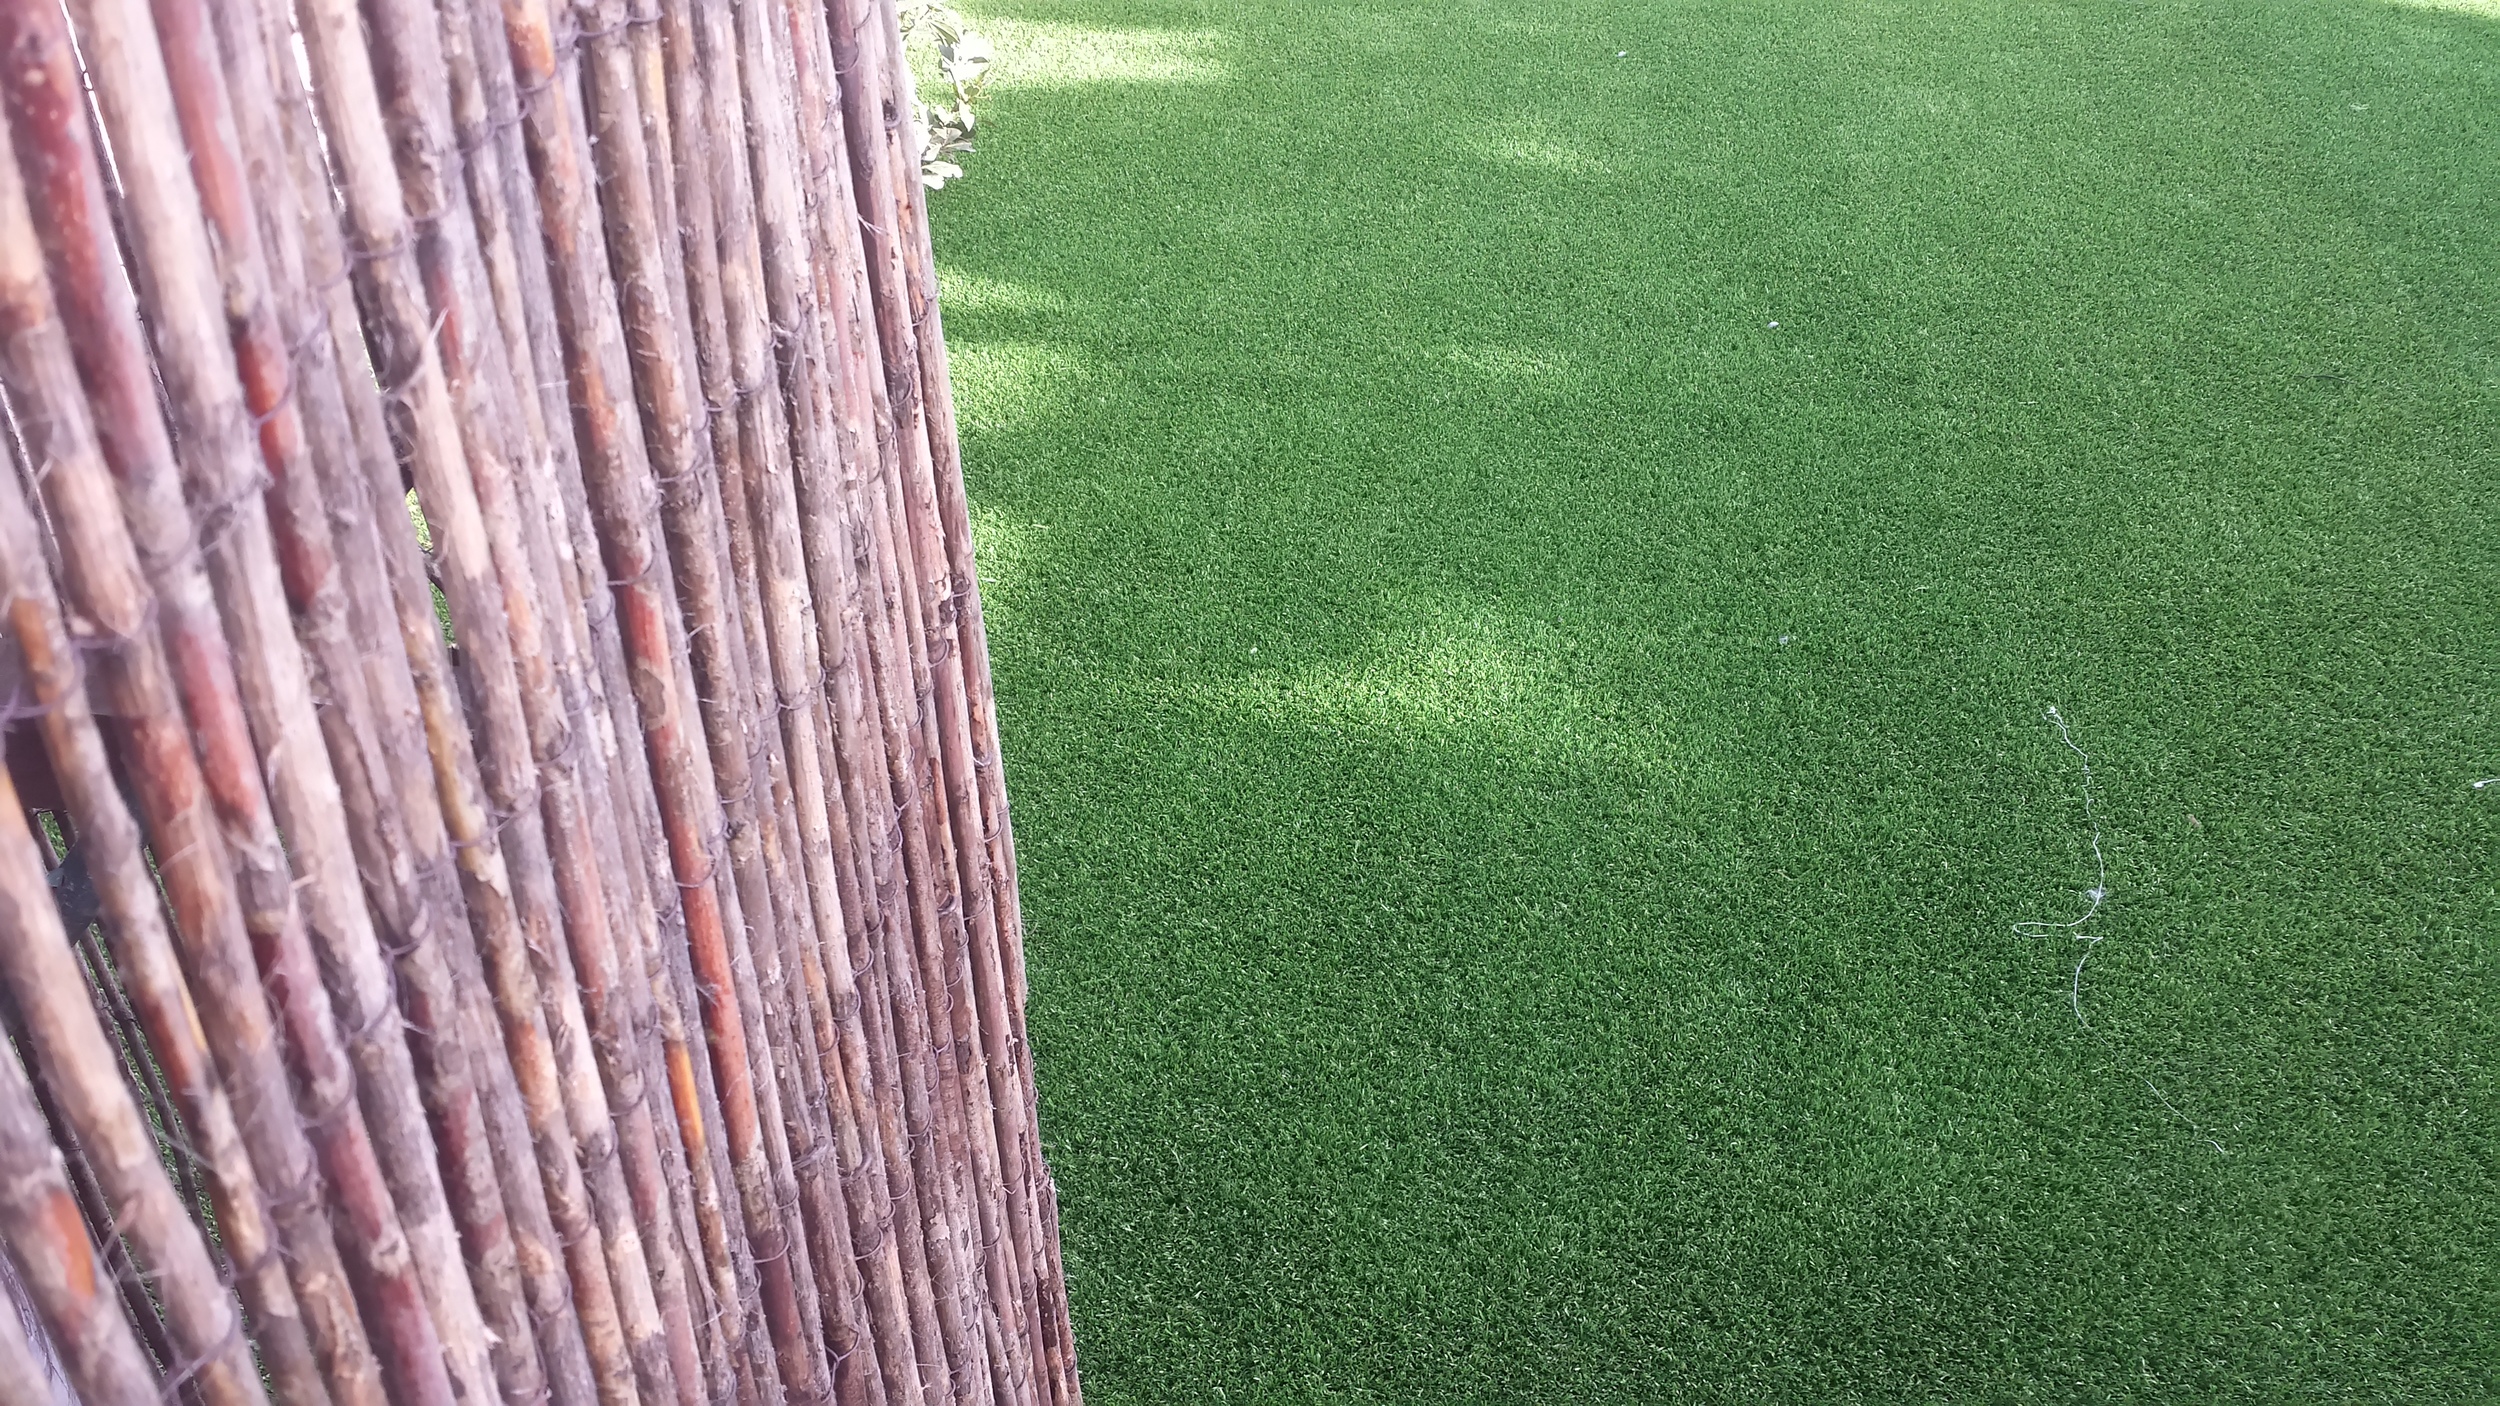 TigerTurf Artificial Grass